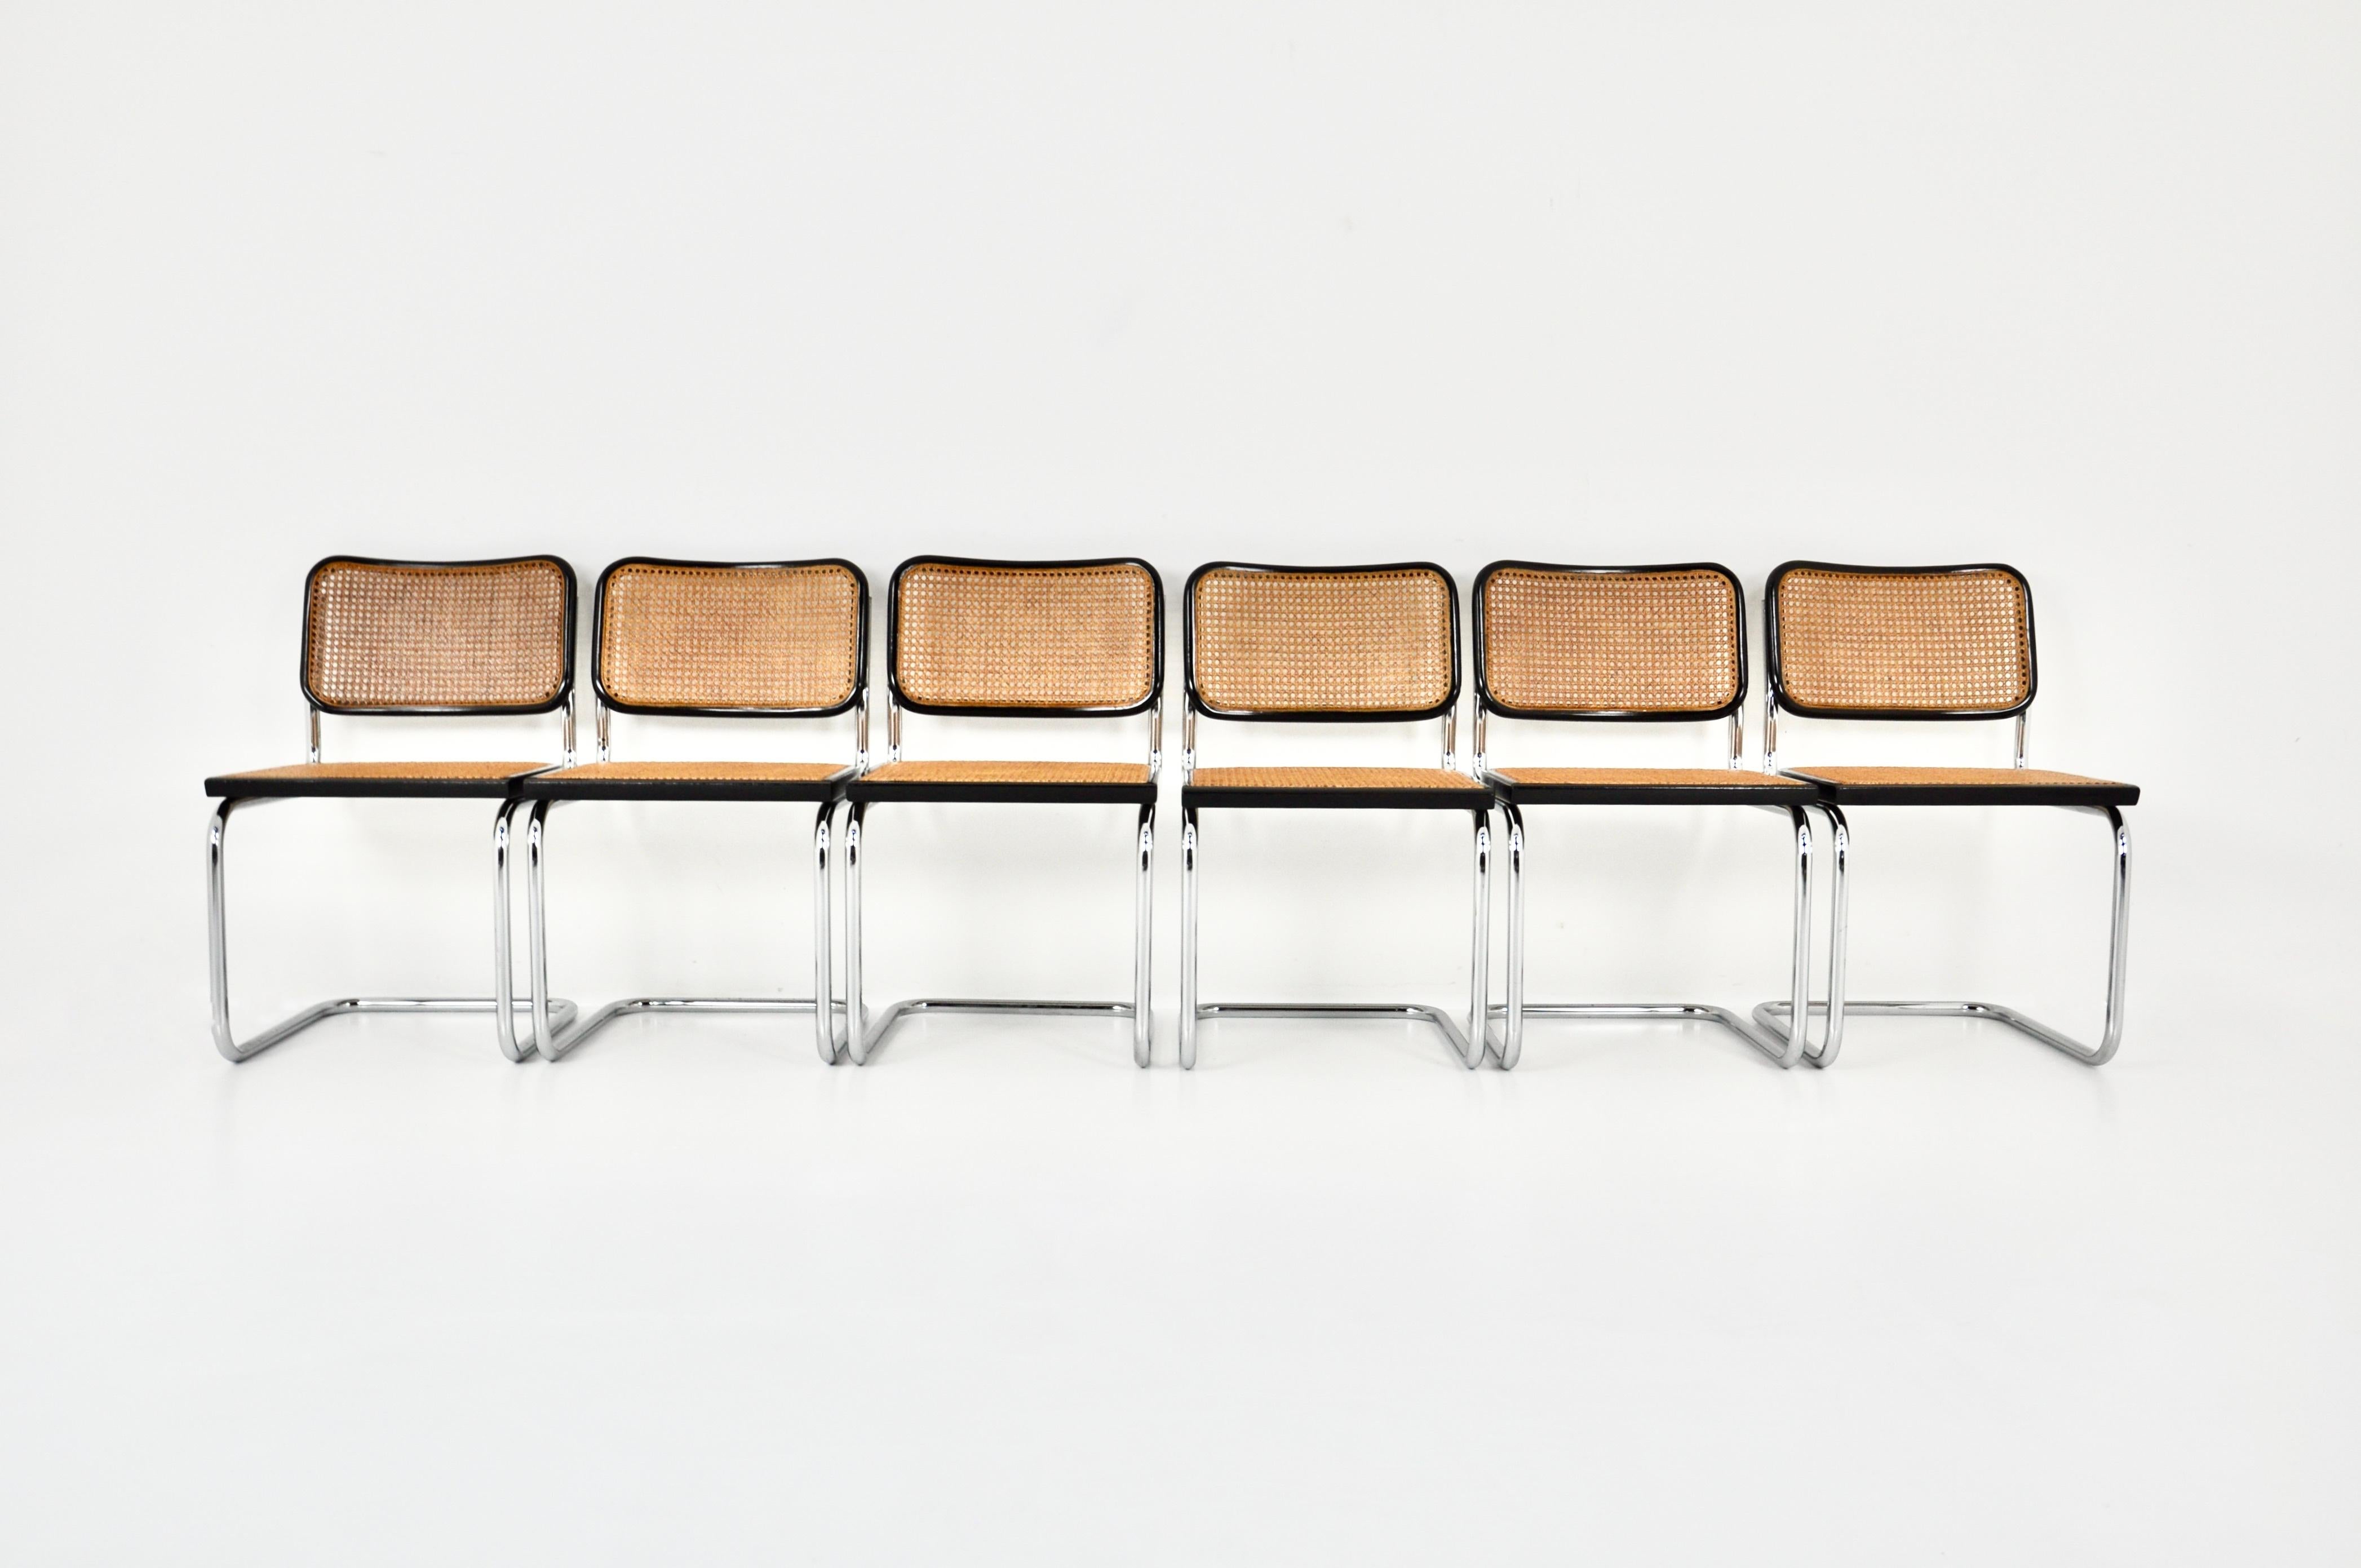 Ensemble de 6 pièces  chaises noires en métal, bois et rotin. Hauteur du siège : 45 cm. Usure due au temps et à l'âge des chaises. 